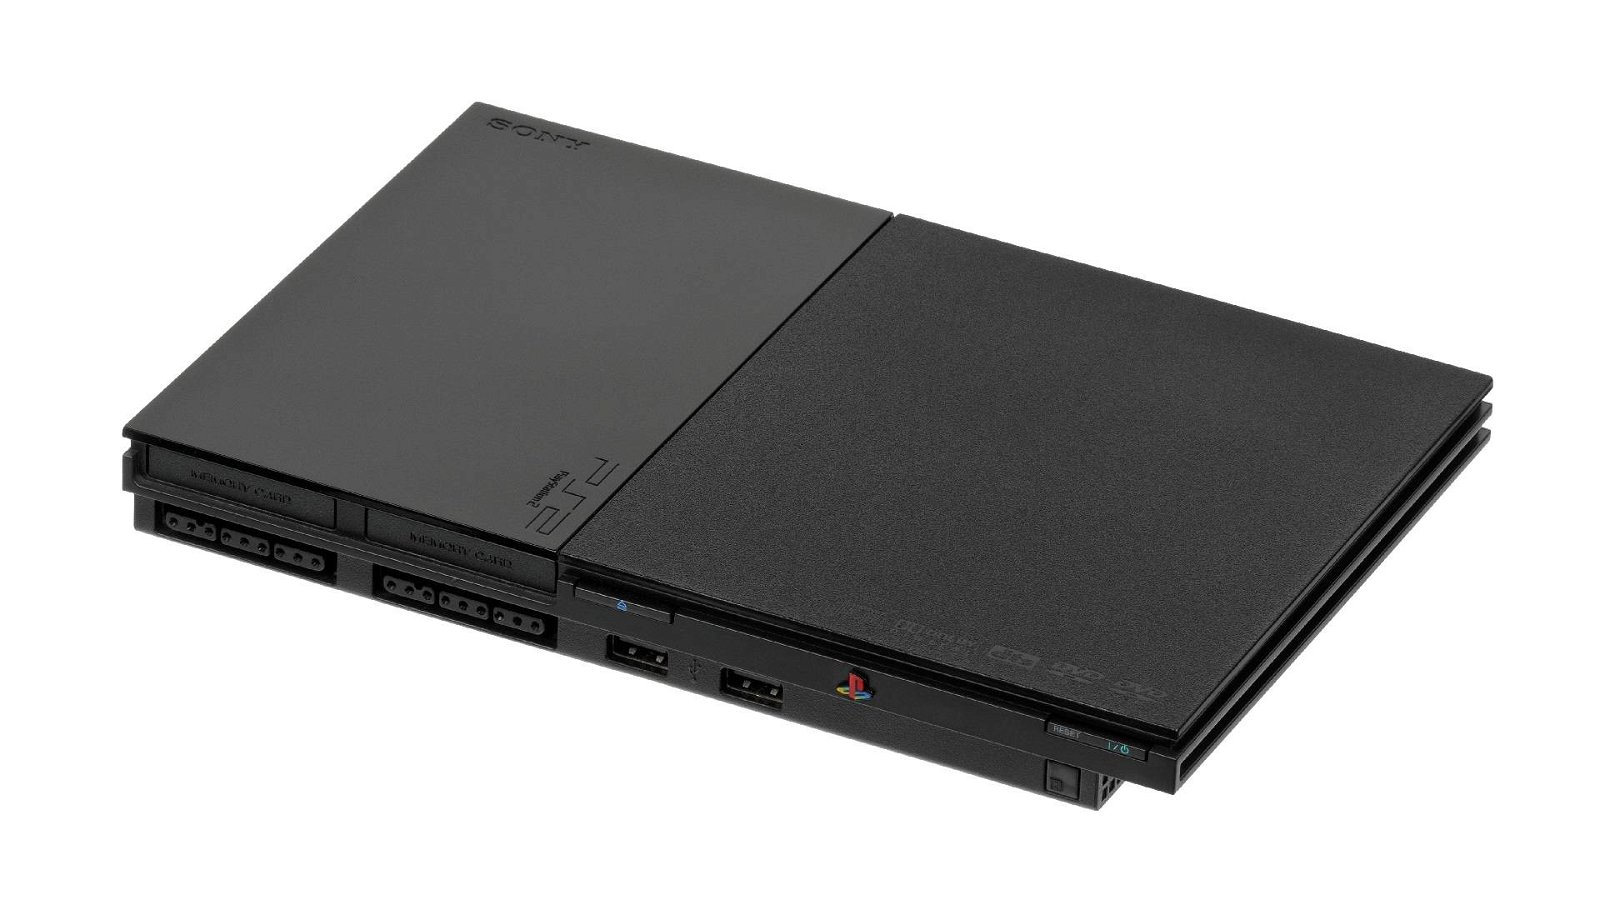 Immagine di PS2 supportava il ray tracing con solo 16K di memoria, ecco il video